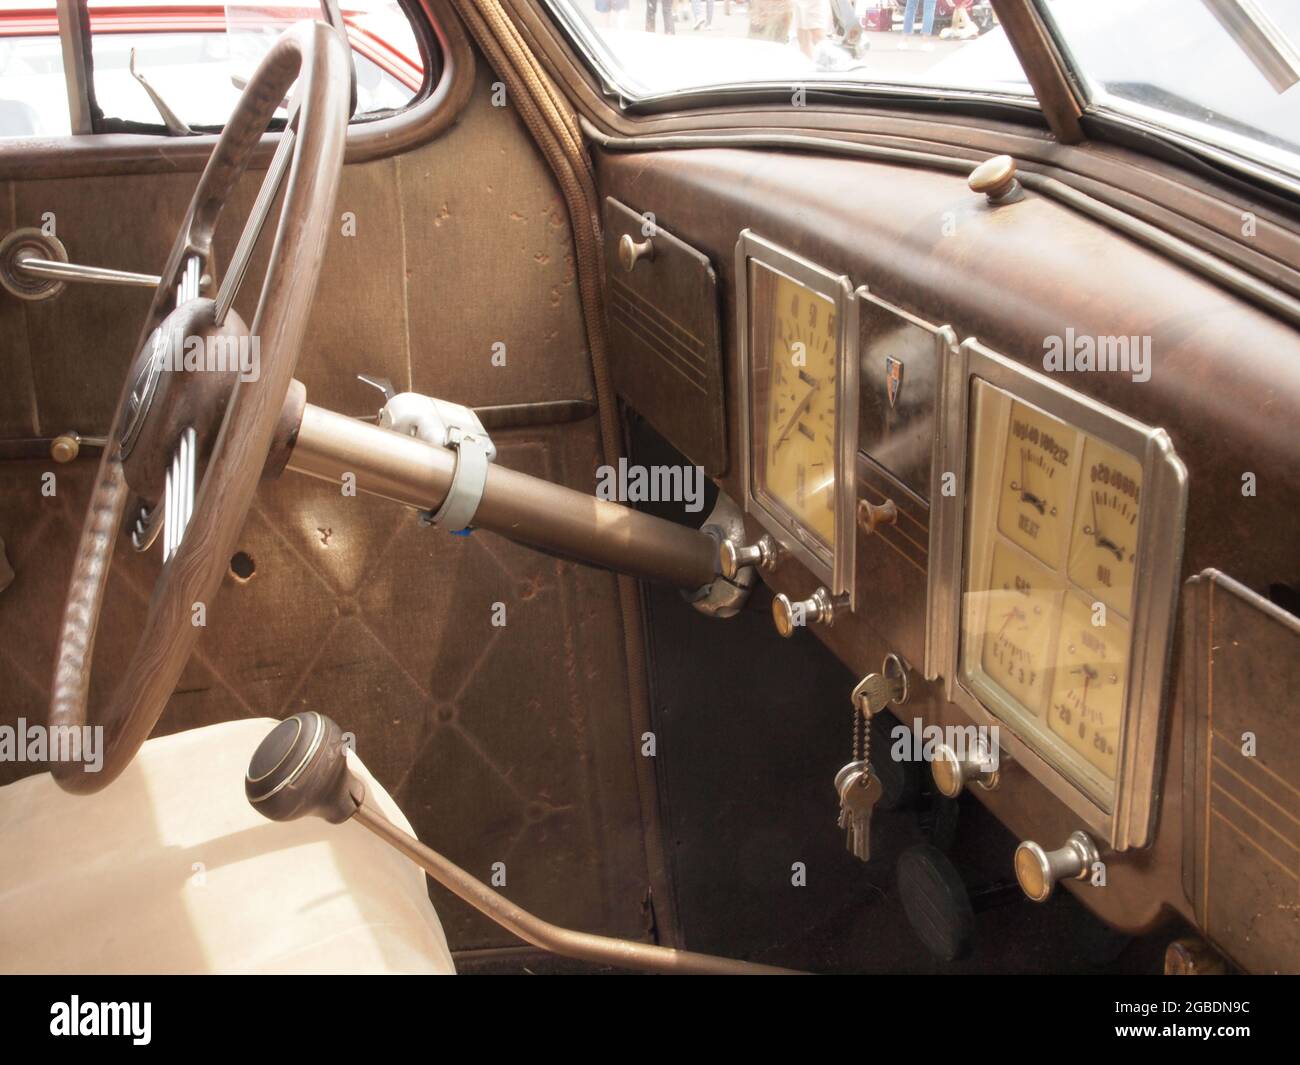 Details zu Oldtimer, die kürzlich auf einer New Jersey Car Show gesehen wurden. Details sind Haubenornamente, Grills und Innenräume von einzigartigen alten Autos auf dem Display. Historisches Auto Stockfoto